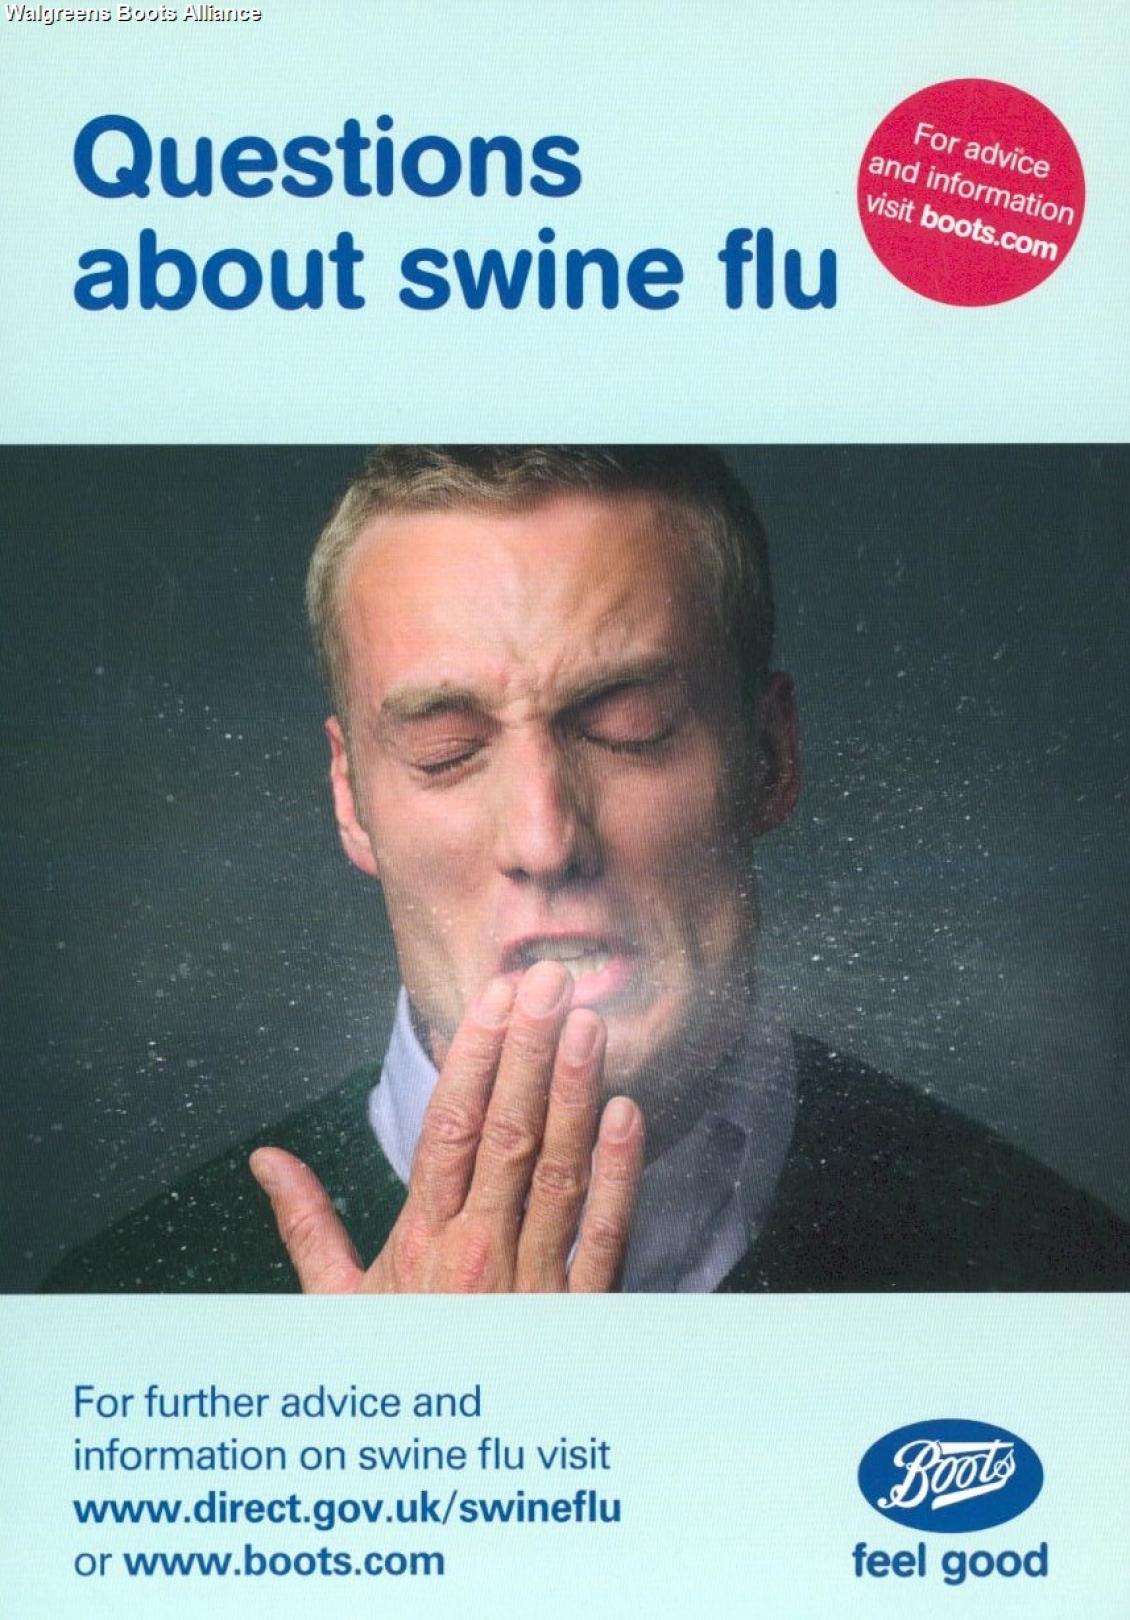 2009 Swine Flu ad